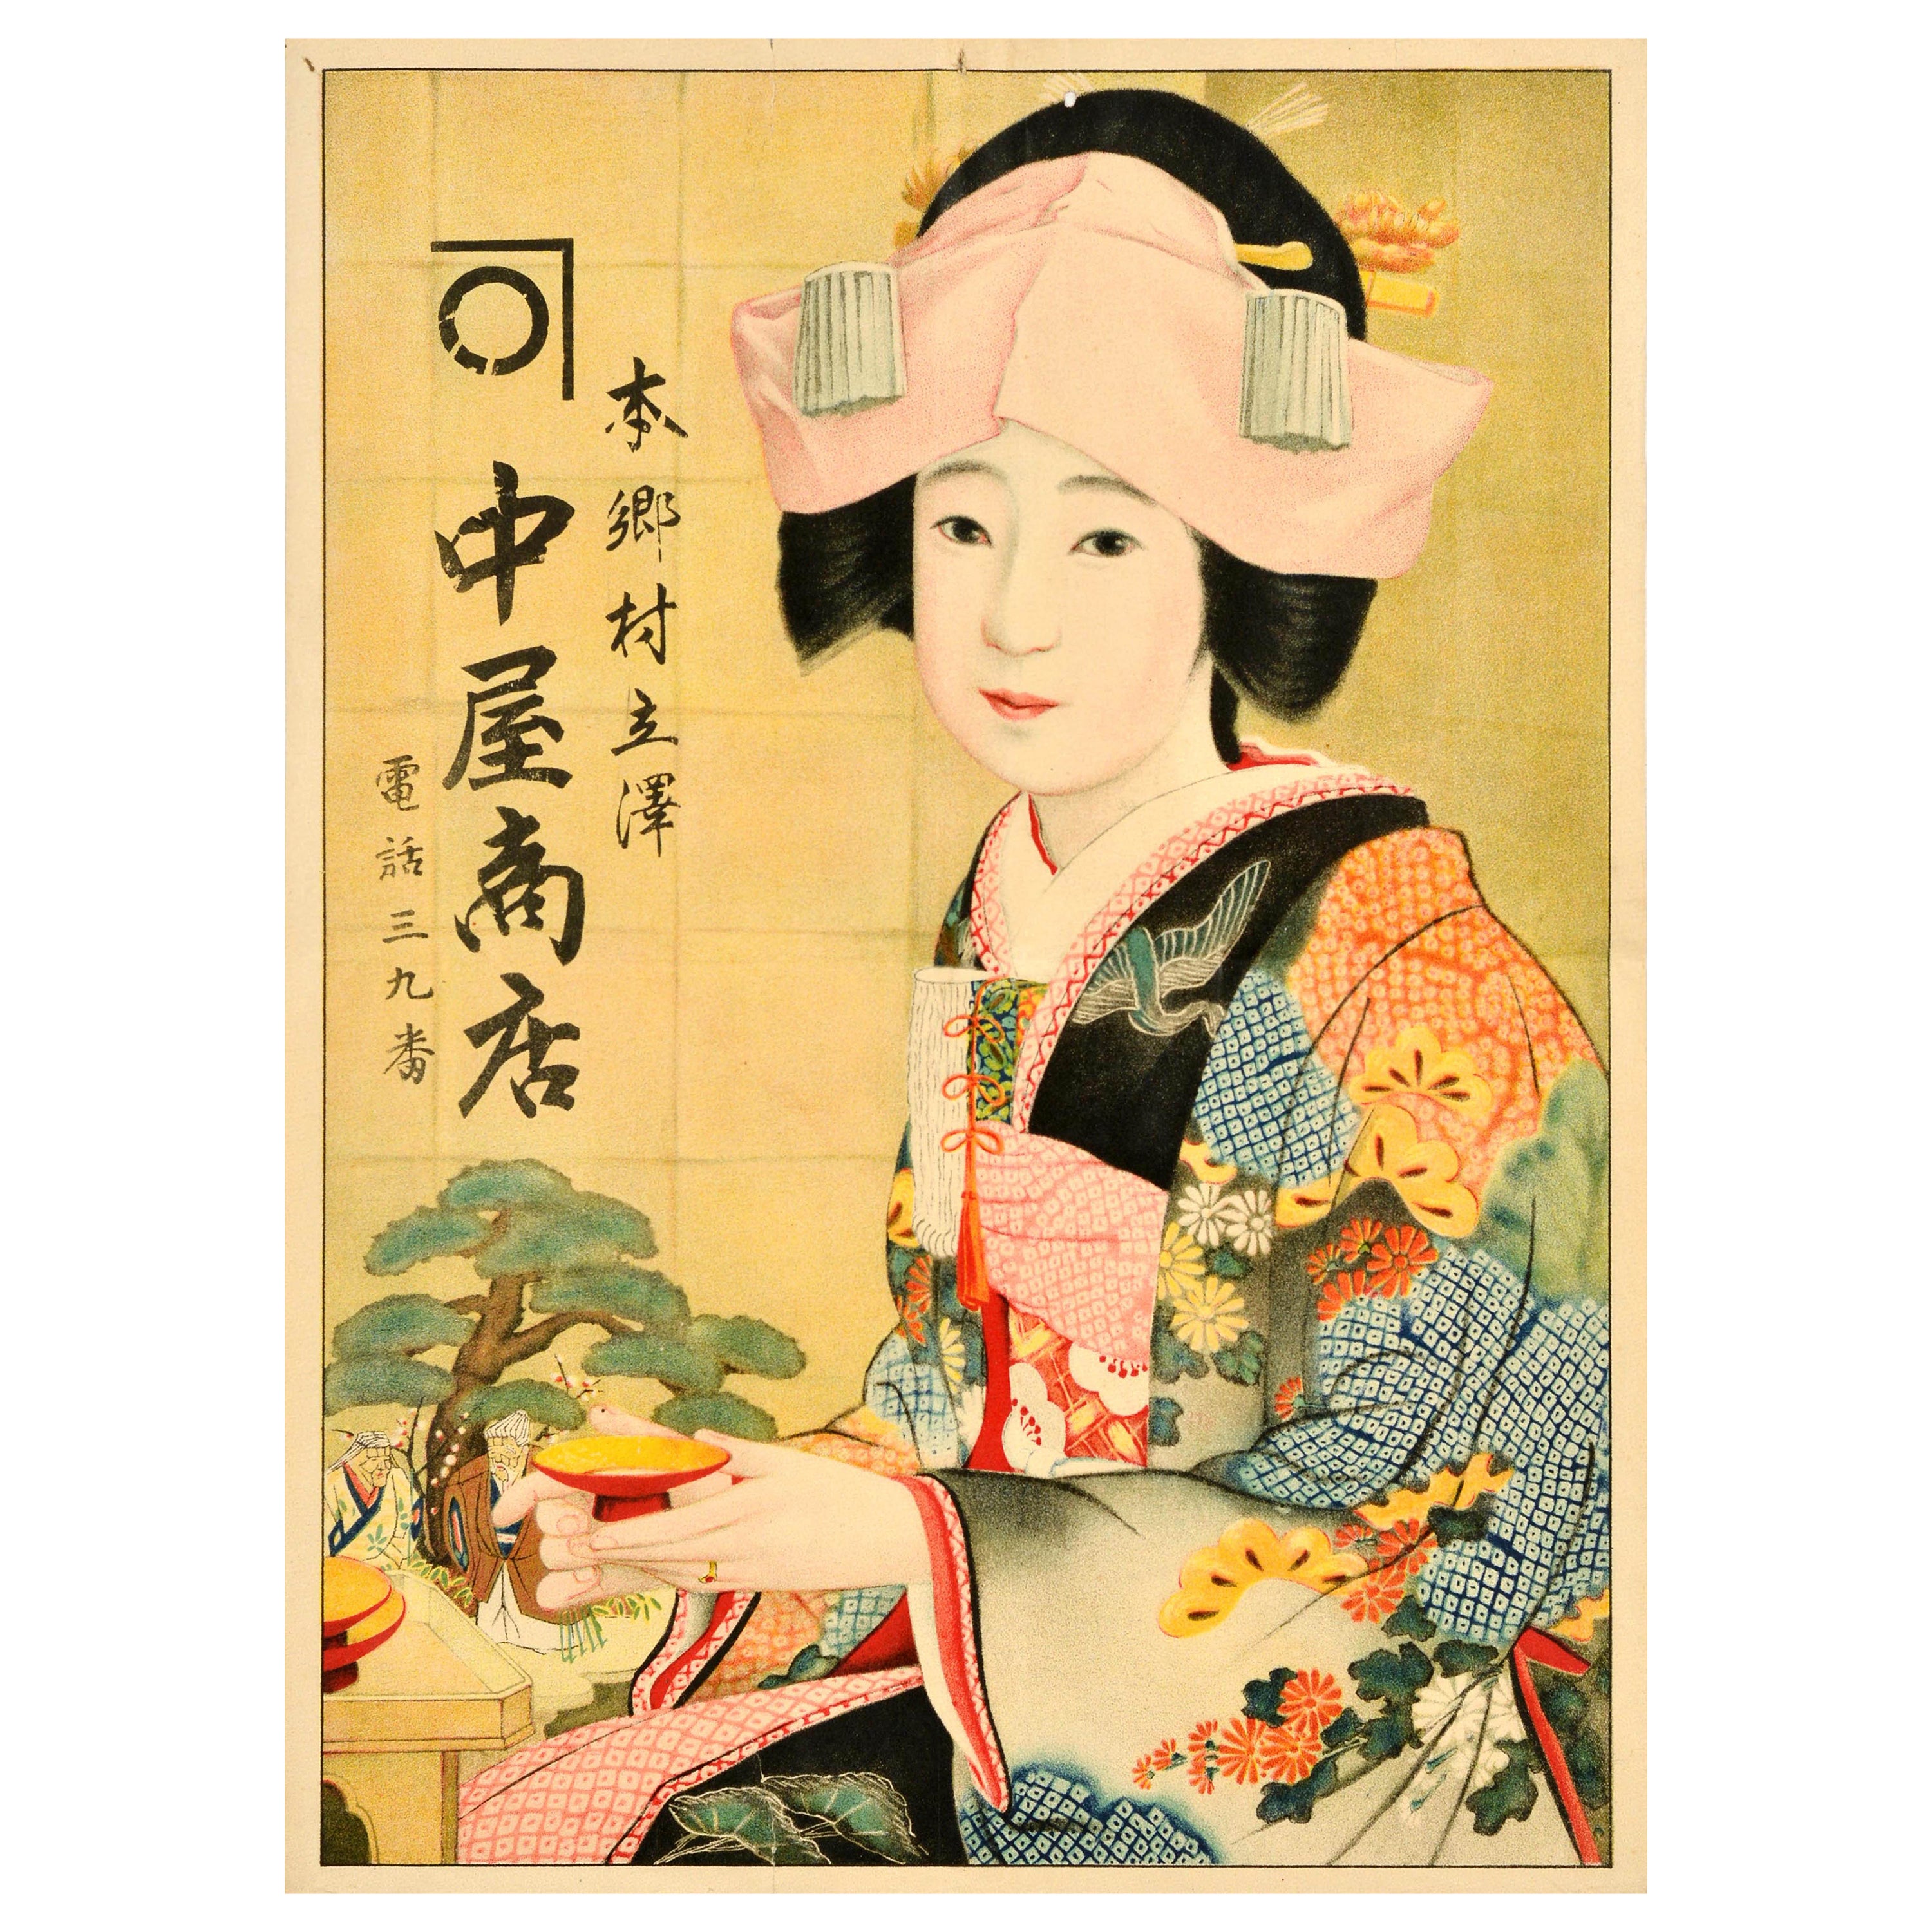 Original Vintage Advertising Poster Hongo Village Tachisawa Kanakaya Store Japan For Sale